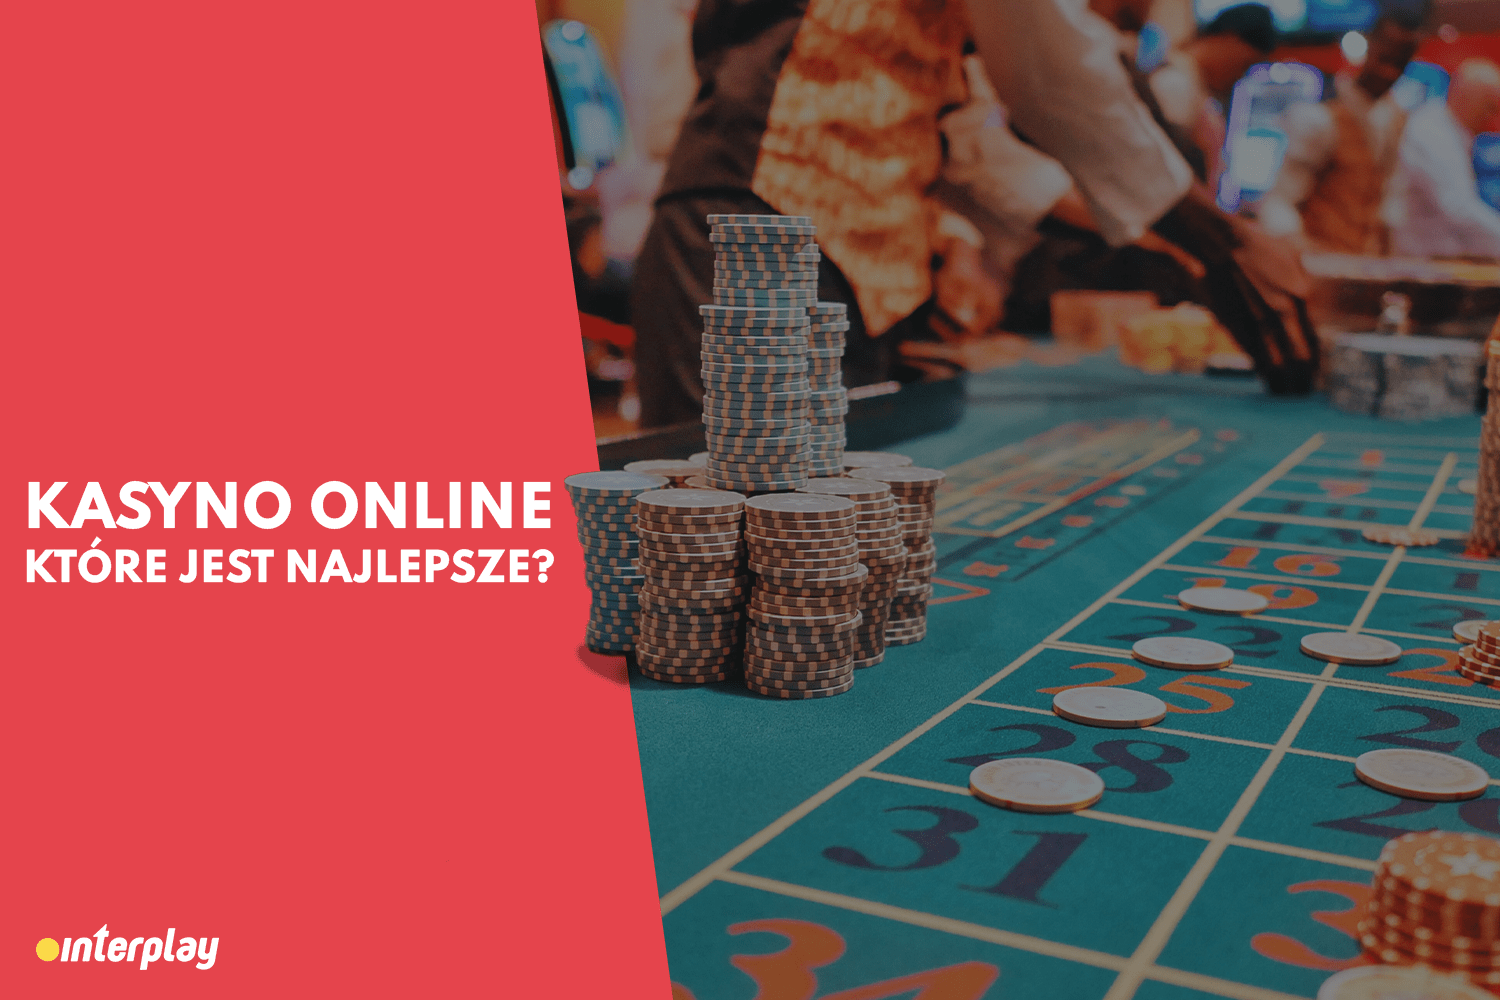 20 najlepszych przykładów kasyno online